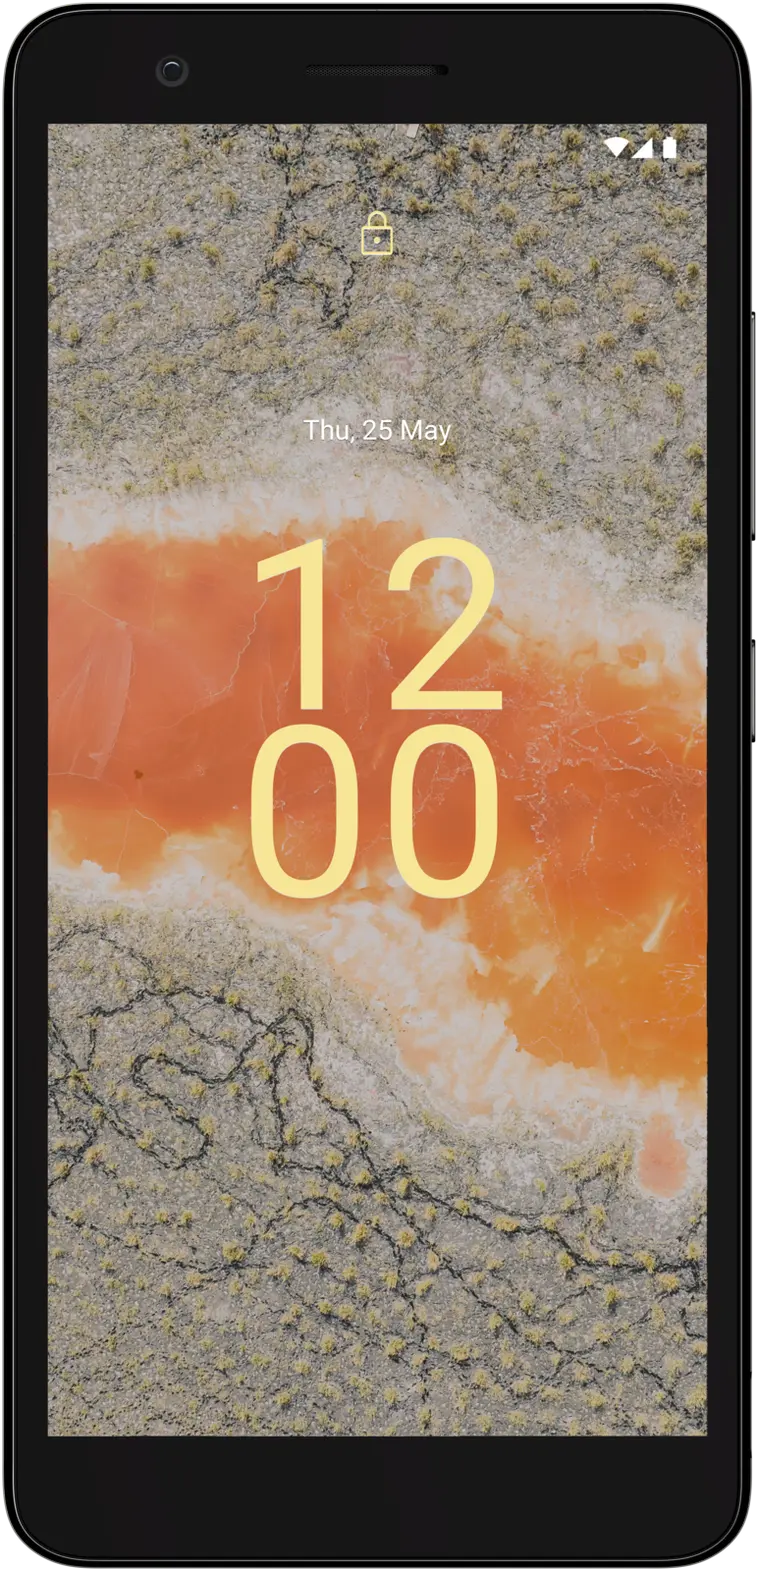 Nokia C02 älypuhelin hiilenharmaa - 1